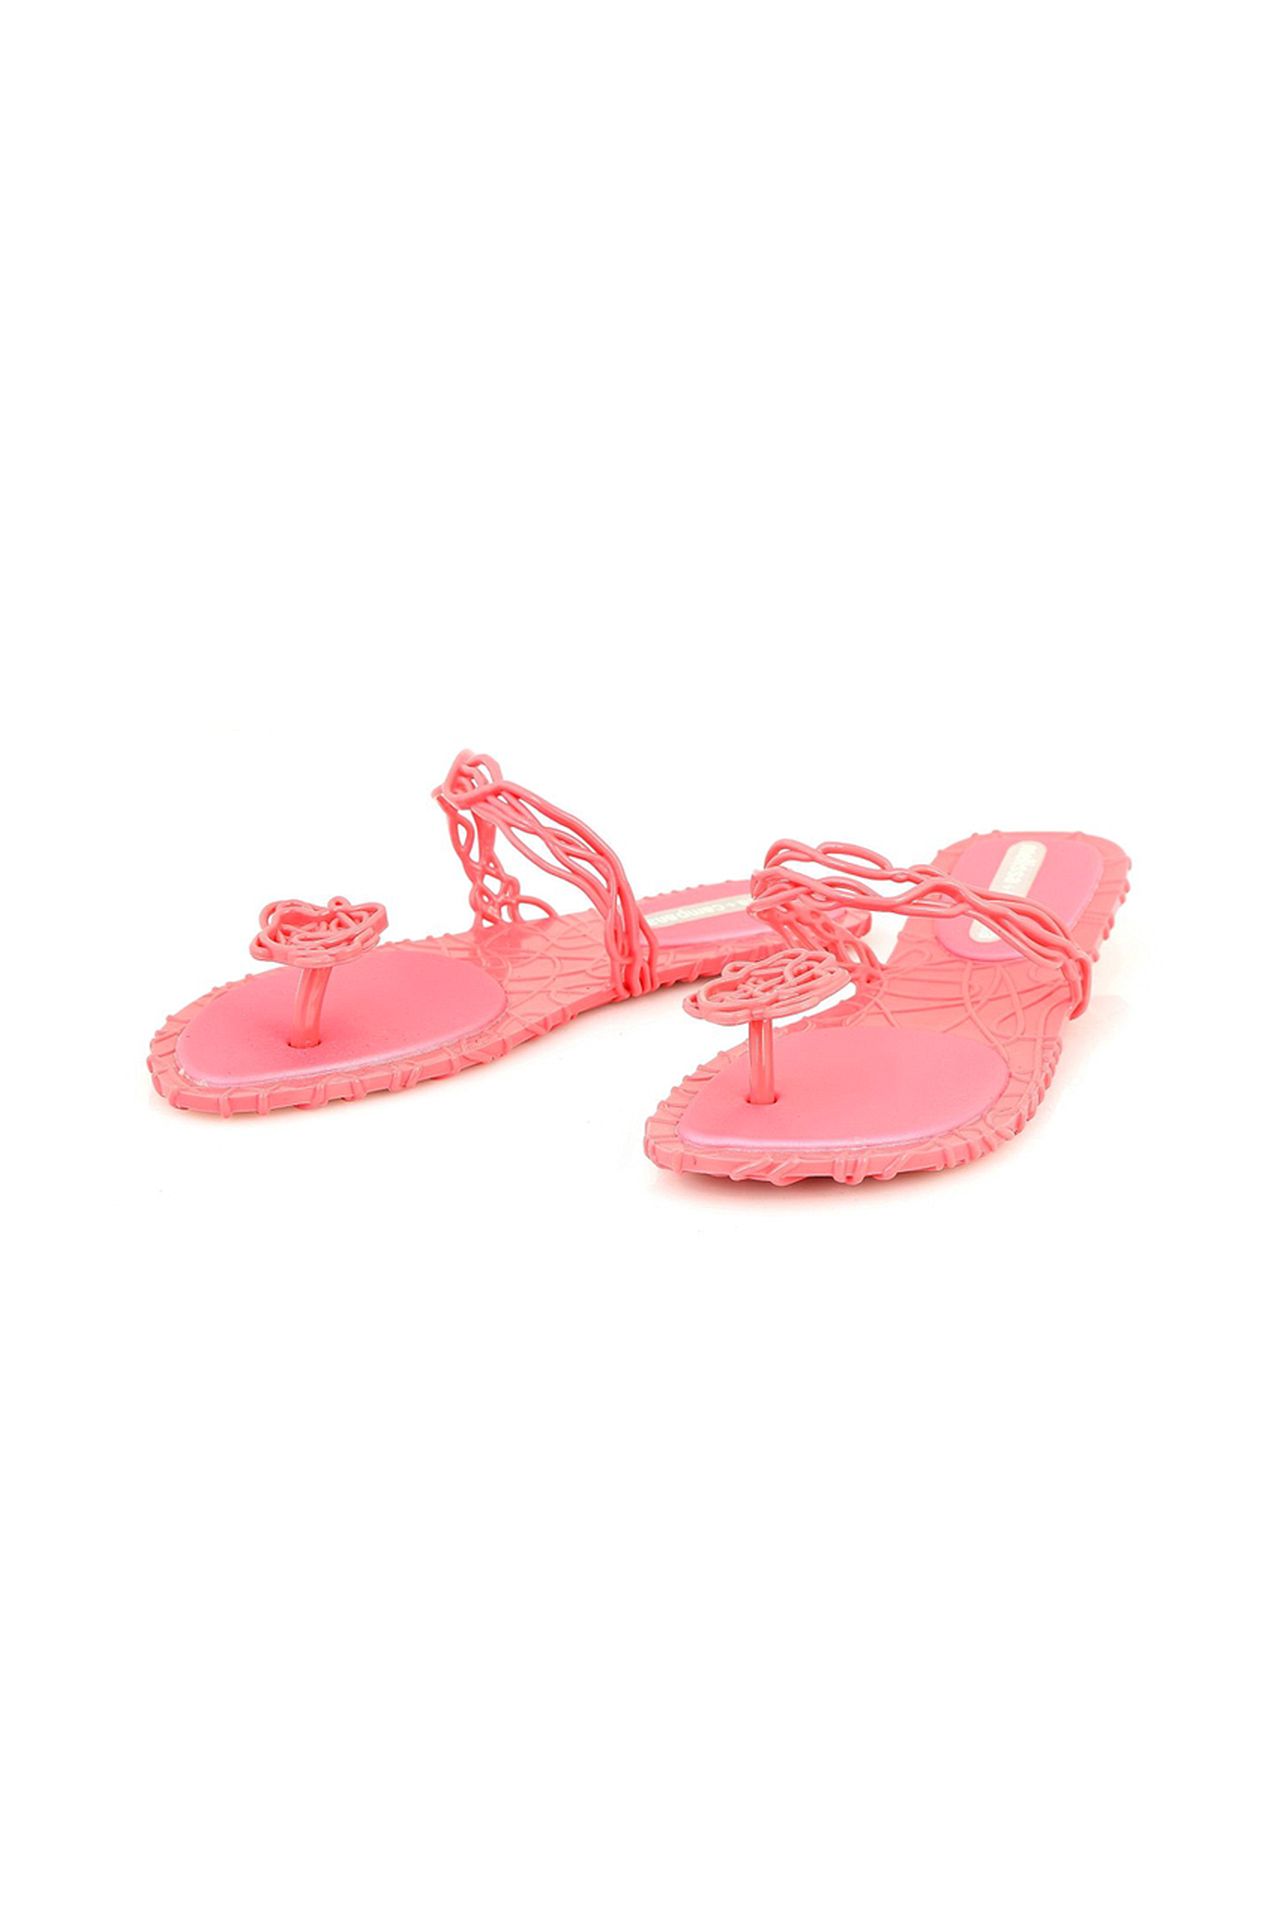 Обувь женская Шлепки V.Westwood (30427/11.1). Купить за 2030 руб.